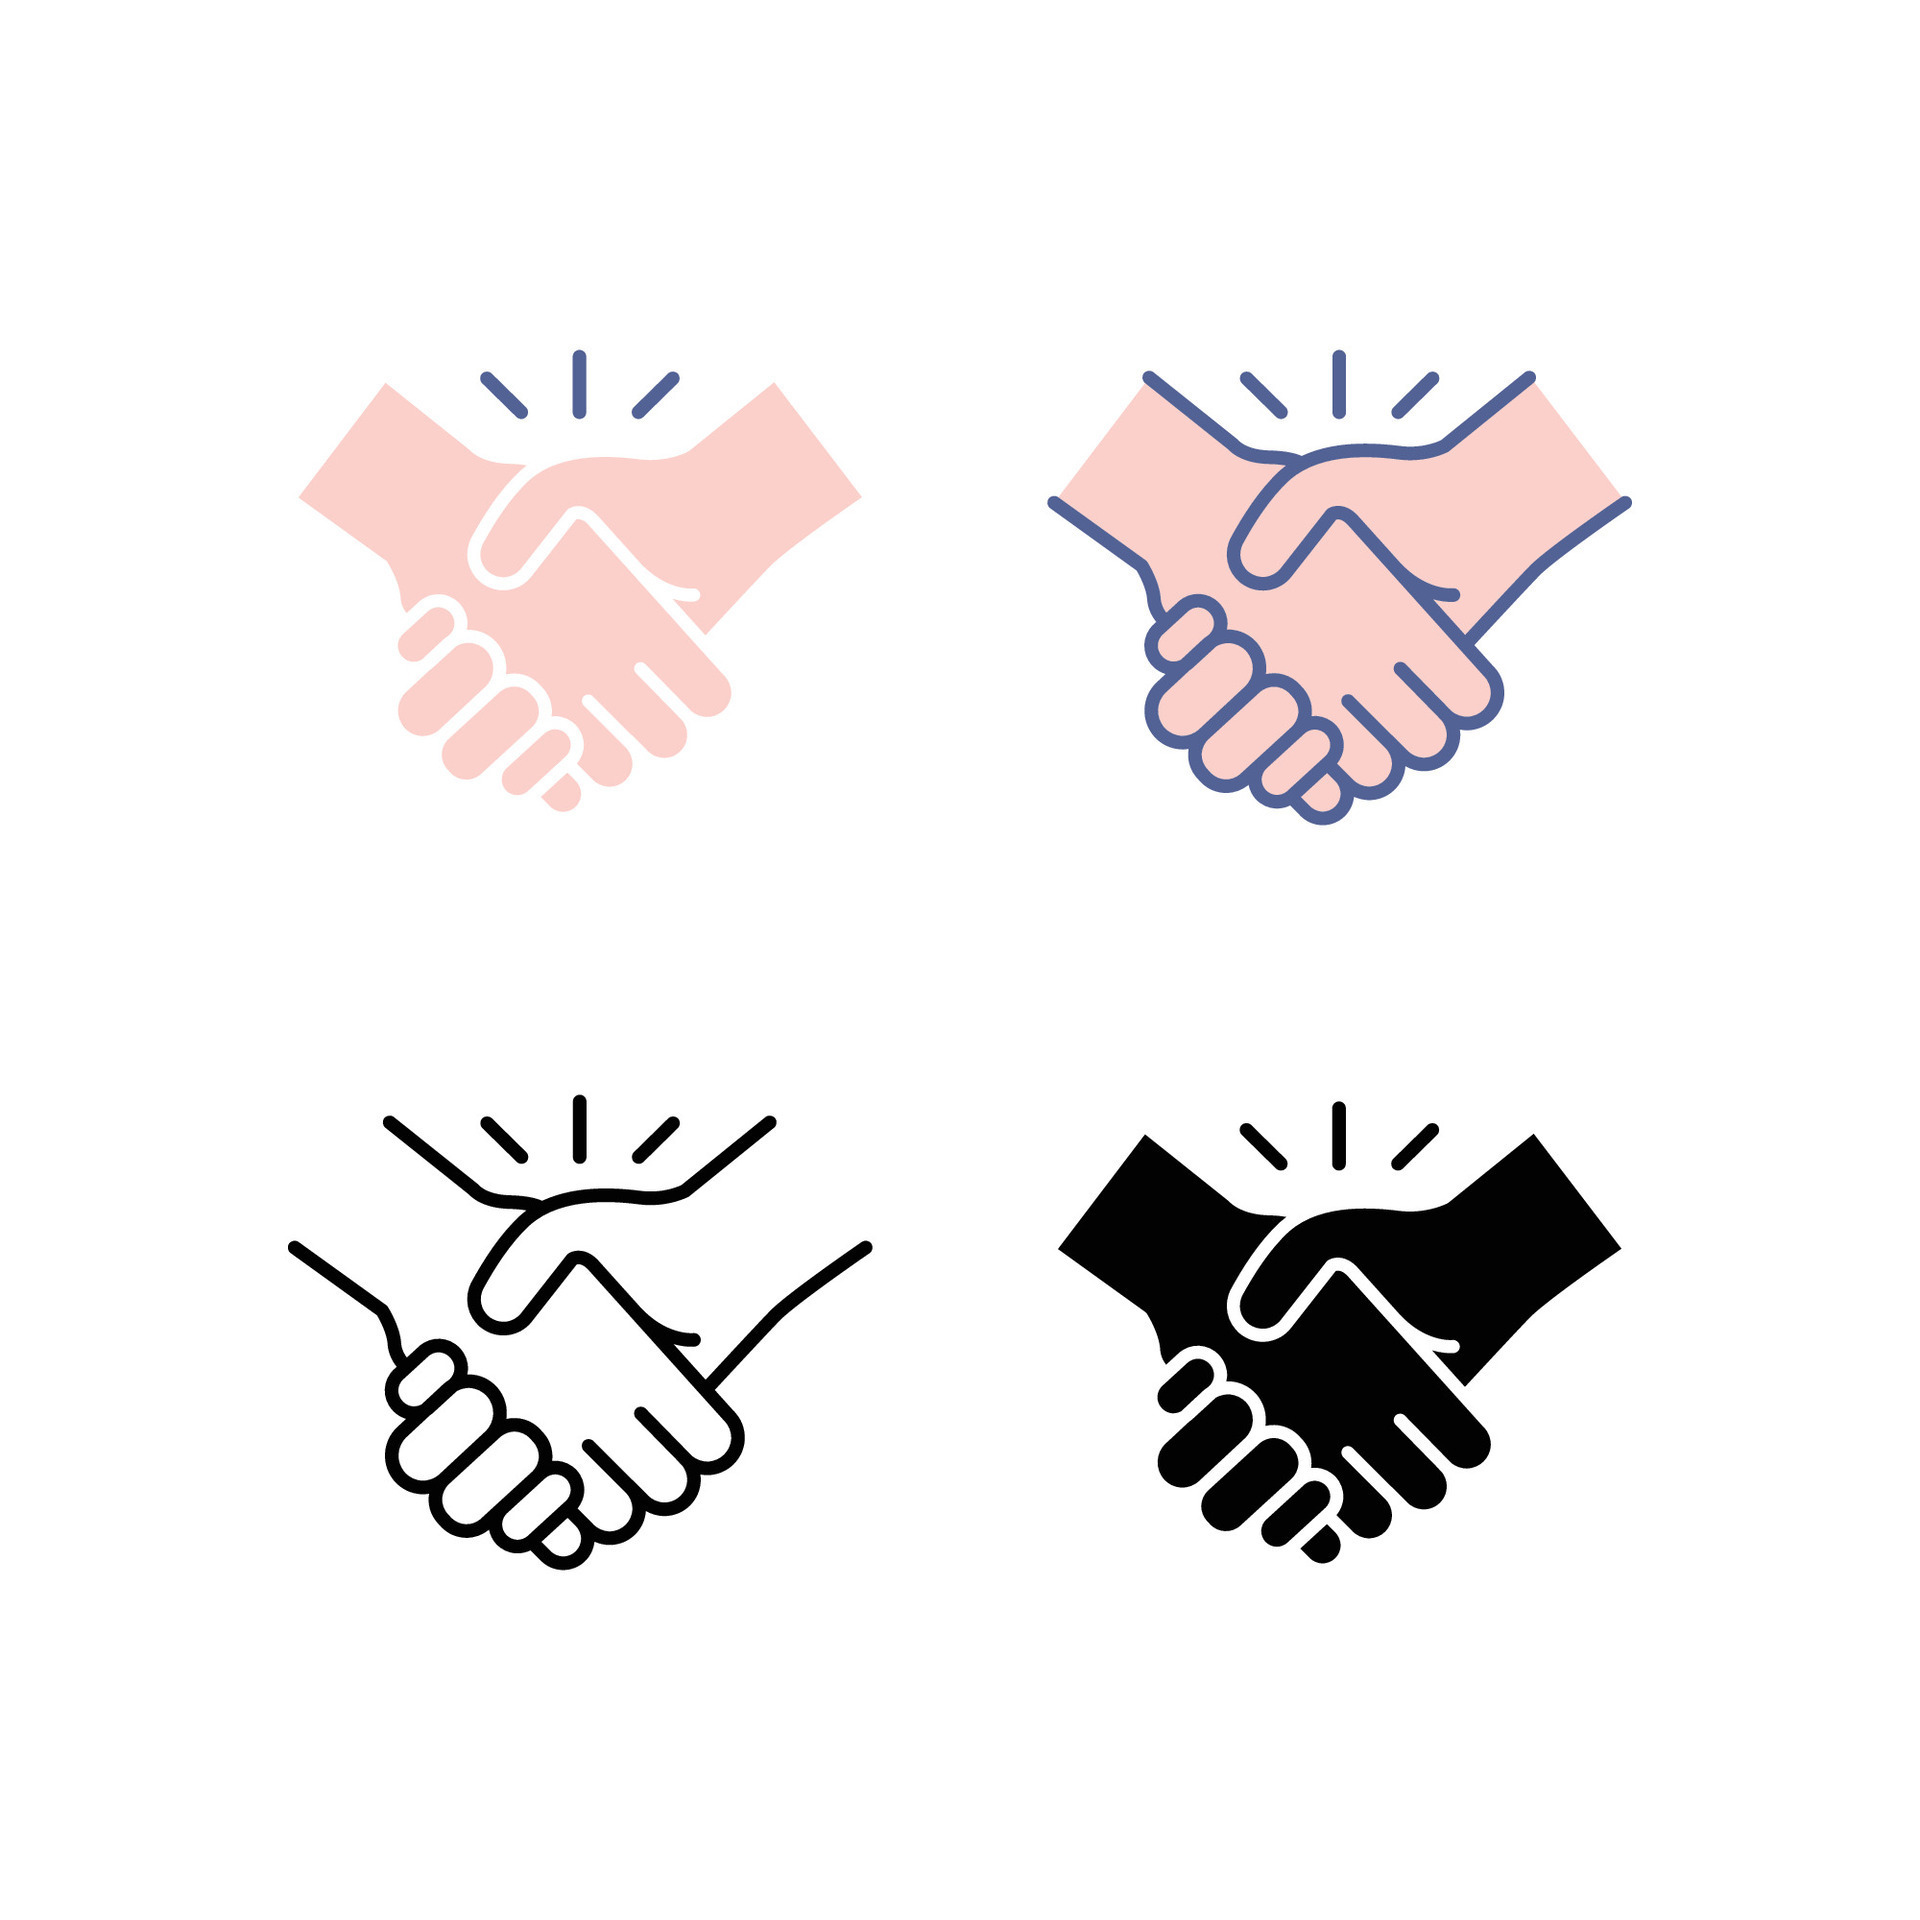 Handshake White Transparent, Vector Handshake, Cooperation, Hand